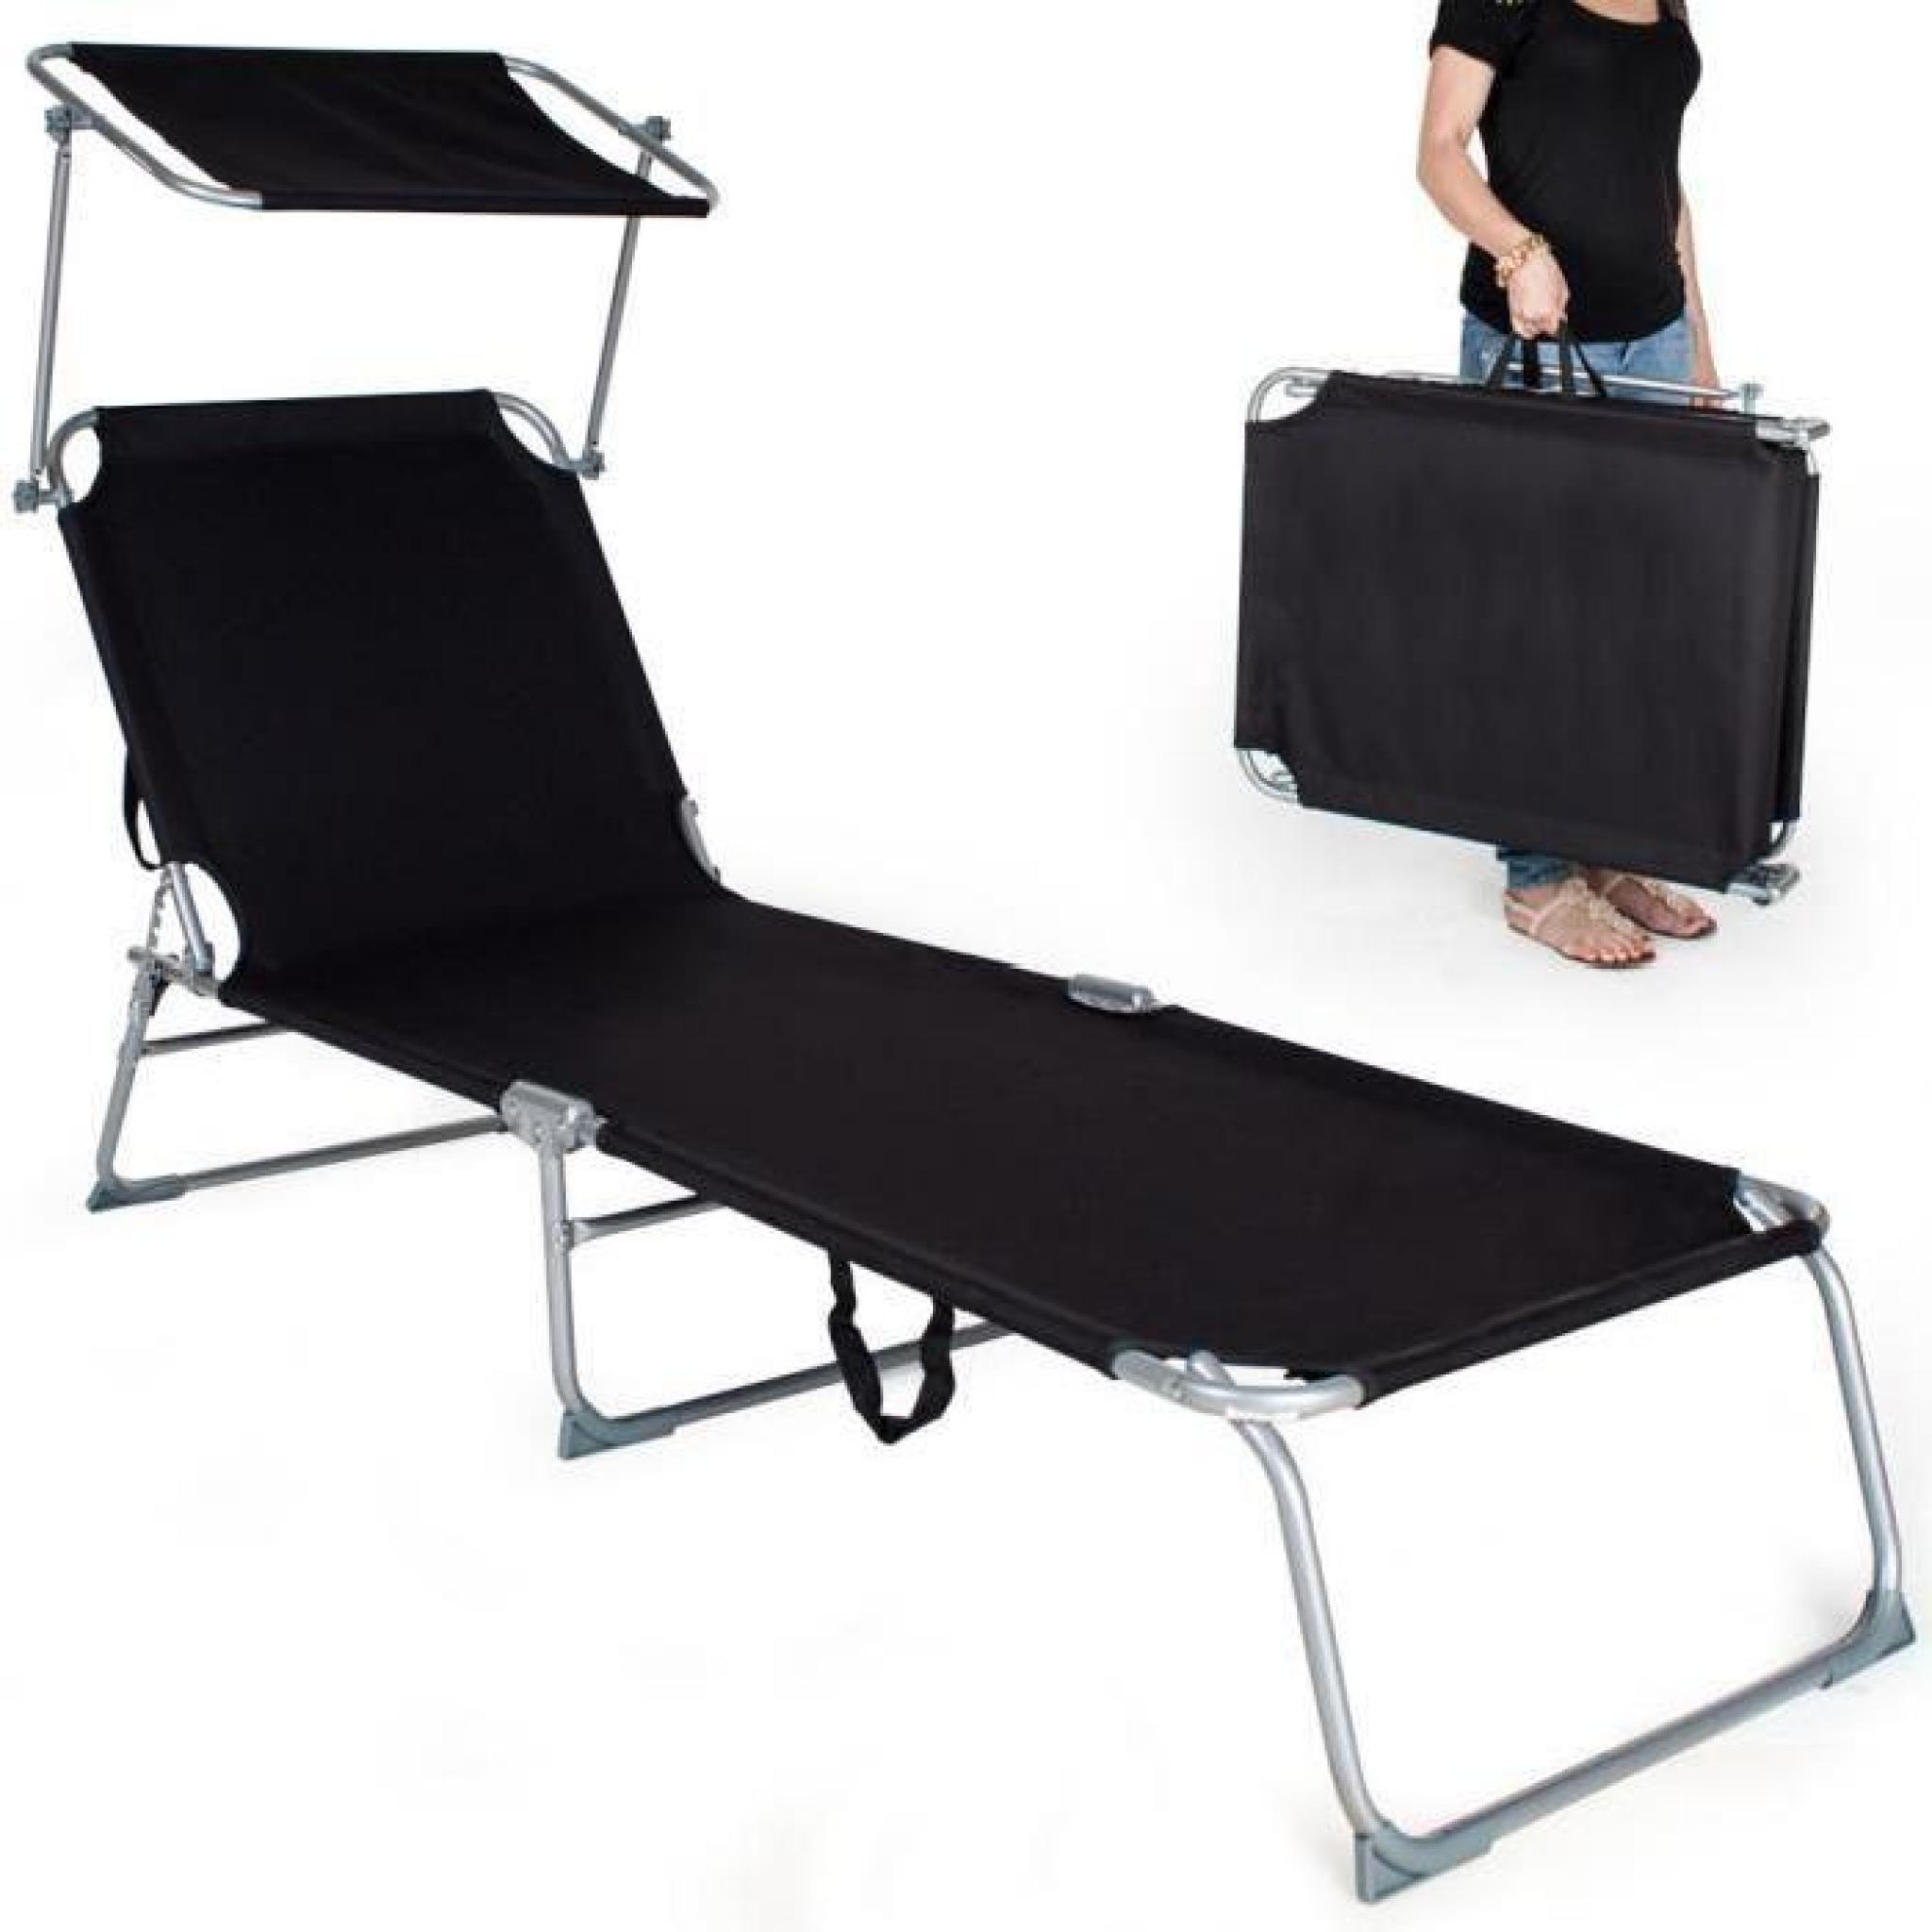 Chaise longue, Transat, Bain de soleil, Pare Soleil, Multi positions, Pliable 190 cm Noir TECTAKE X 1